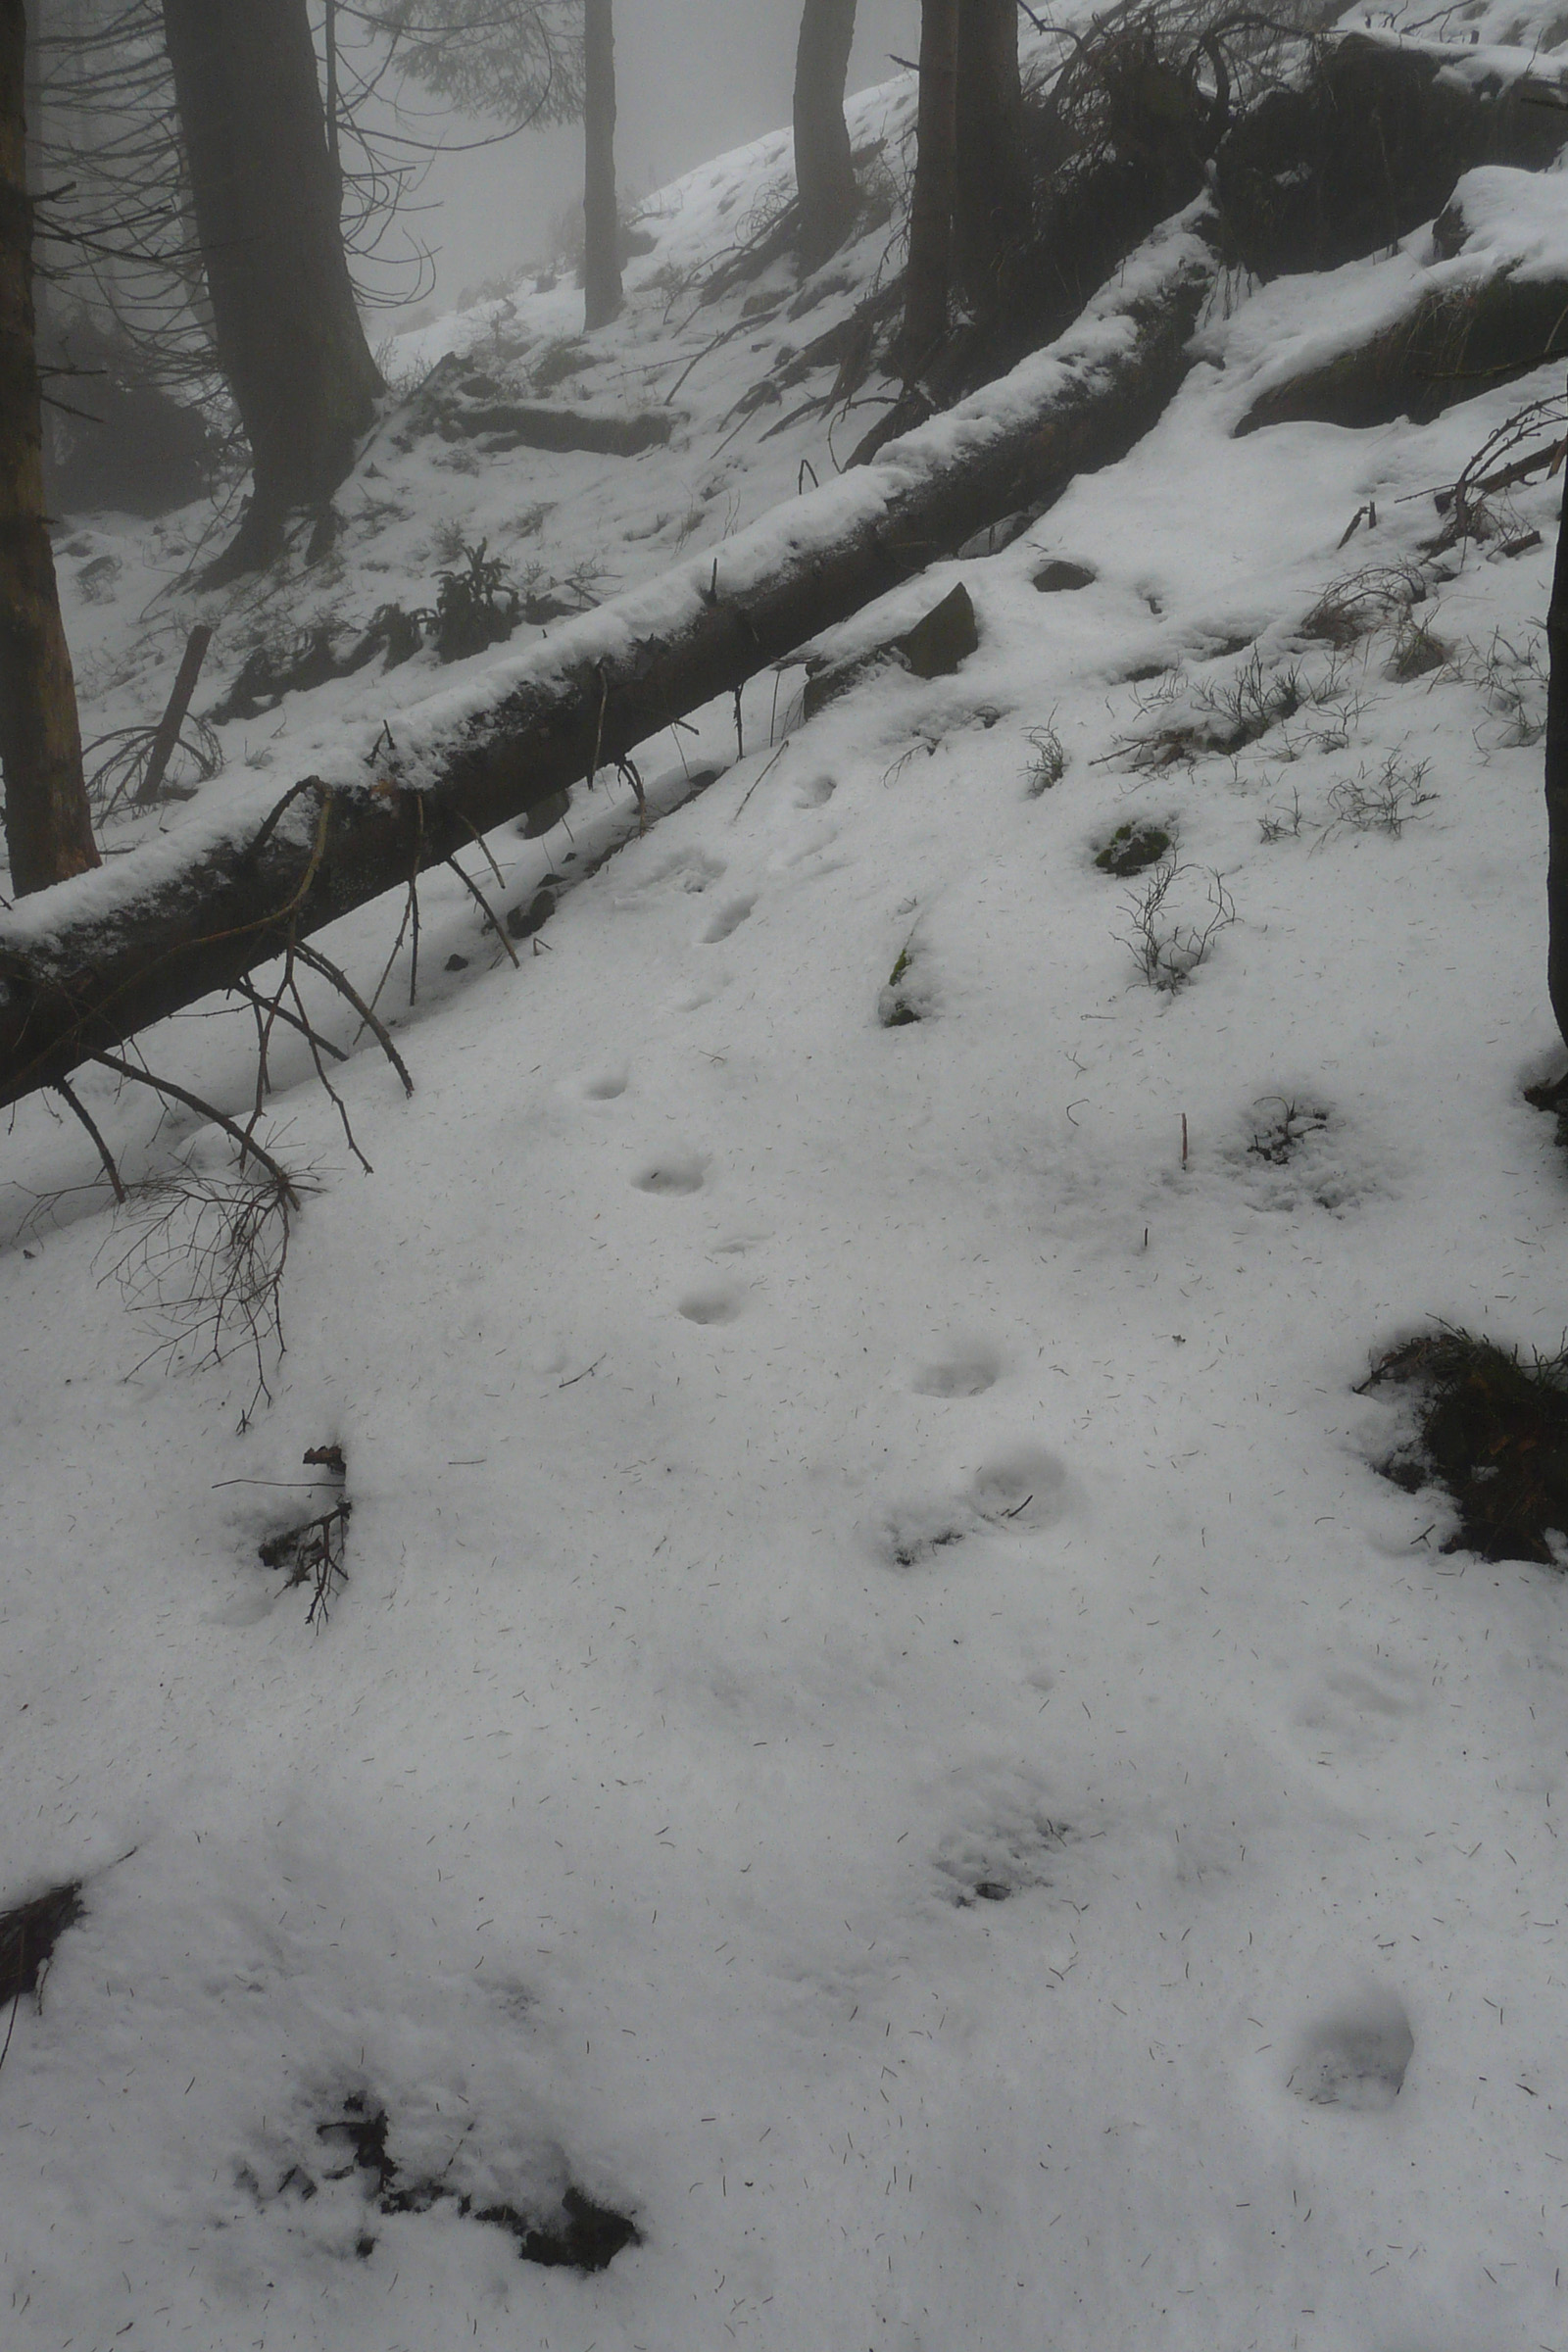 32_Starší stopy rysa ostrovida v mokrém sněhu2_Barbora Telnarová